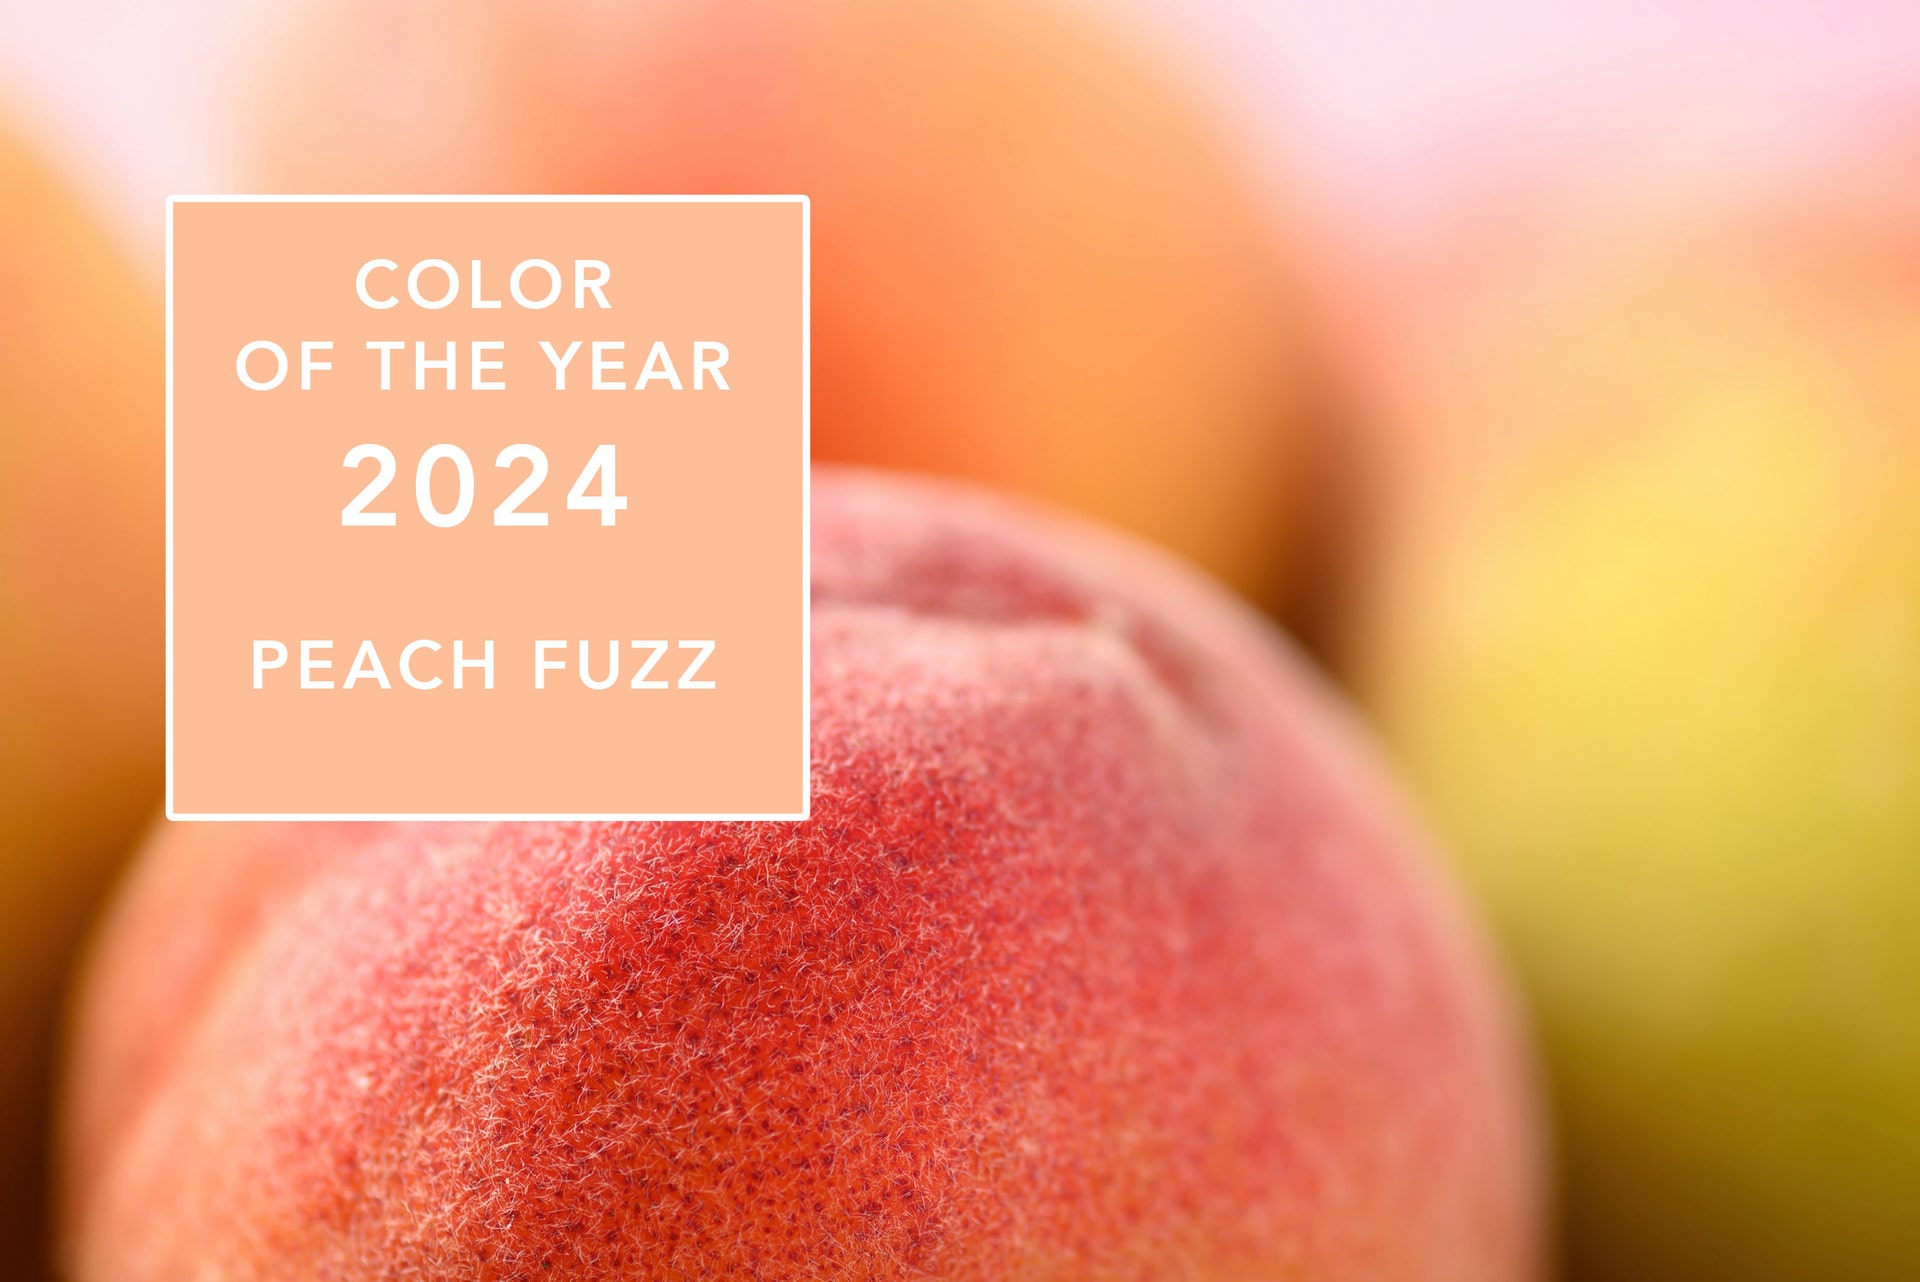 رنگ سال ۲۰۲۴، رنگ هلو با پرزهایش است، که حالت مخملی دارد.